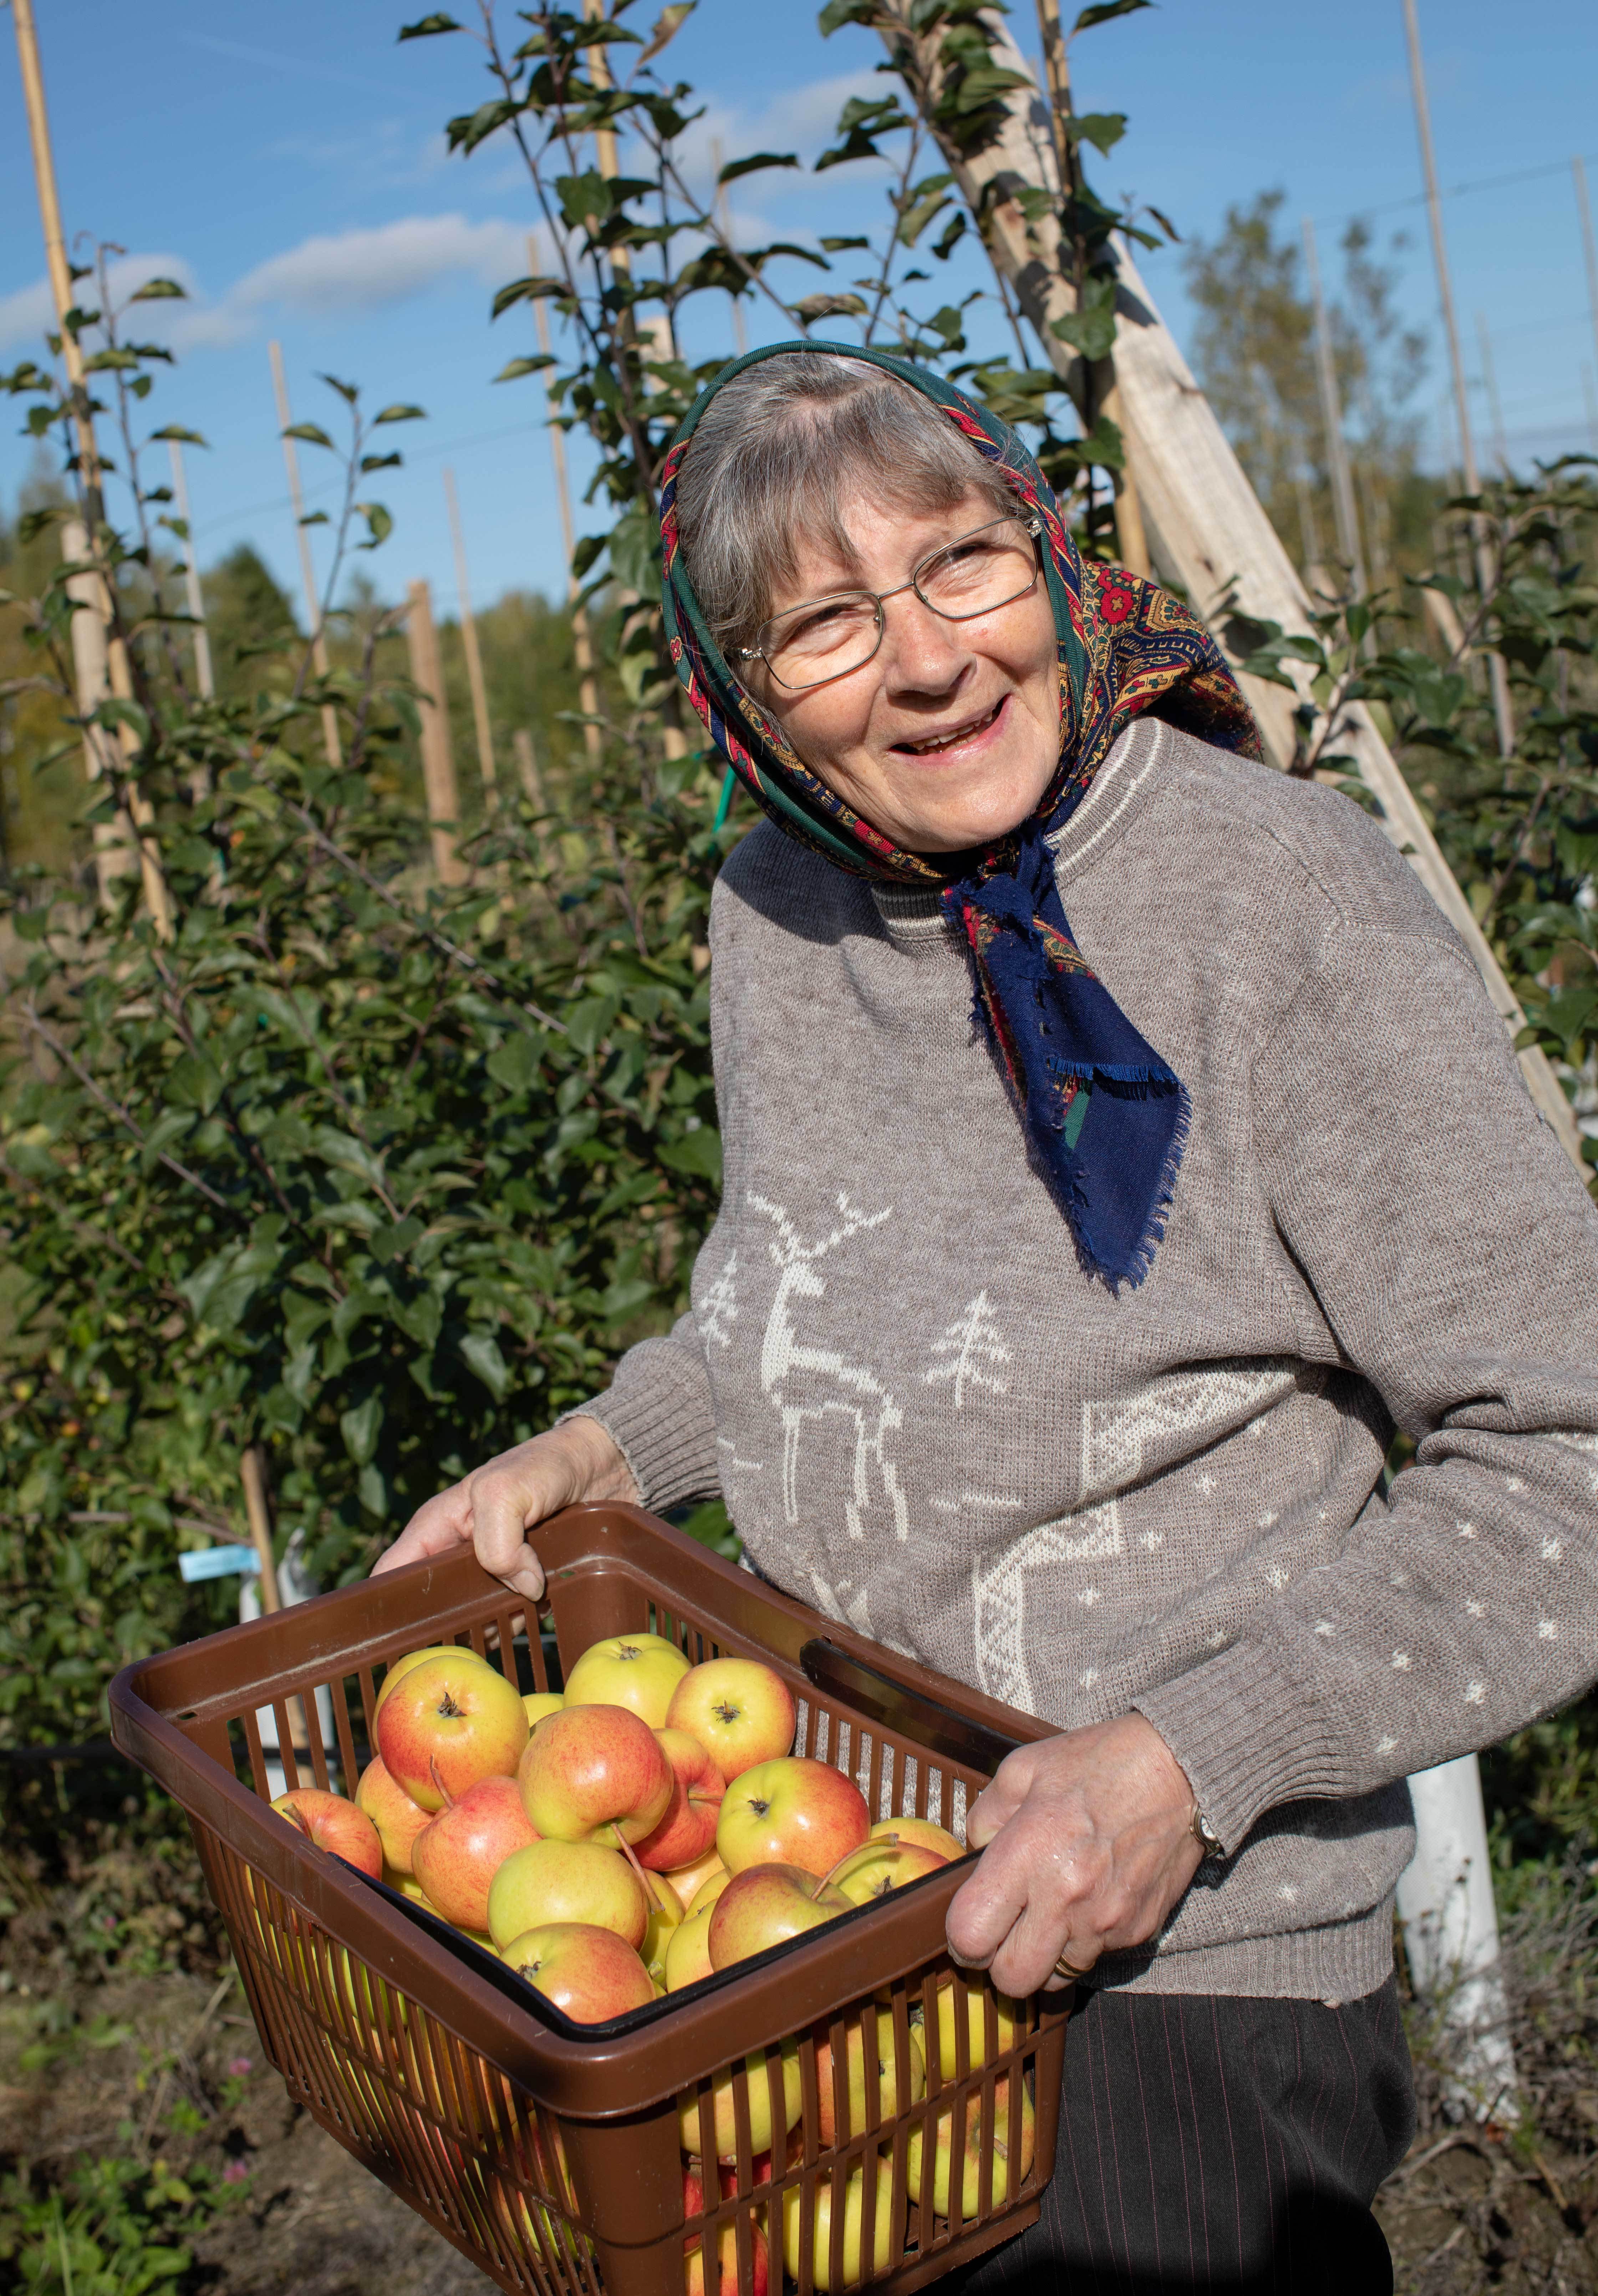 Äldre kvinna med huvudduk med en korg äpplen i händerna.